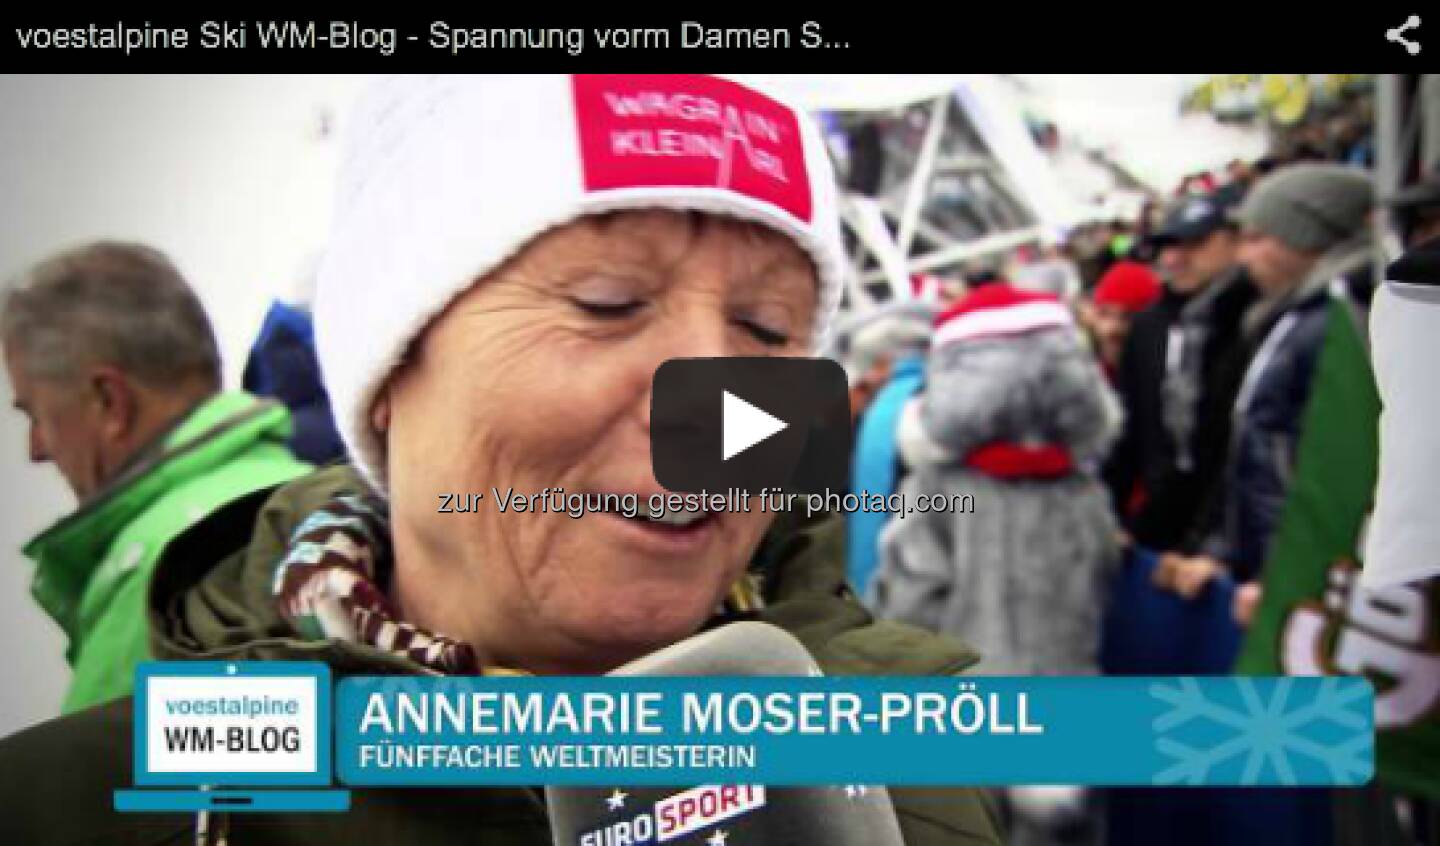 Annemarie Moser-Pröll im Video vor dem Damen Super G http://voestalpine-wm-blog.at/2013/02/05/voestalpine-ski-wm-blog-spannung-vorm-damen-super-g/#.UREkio7aK_Q